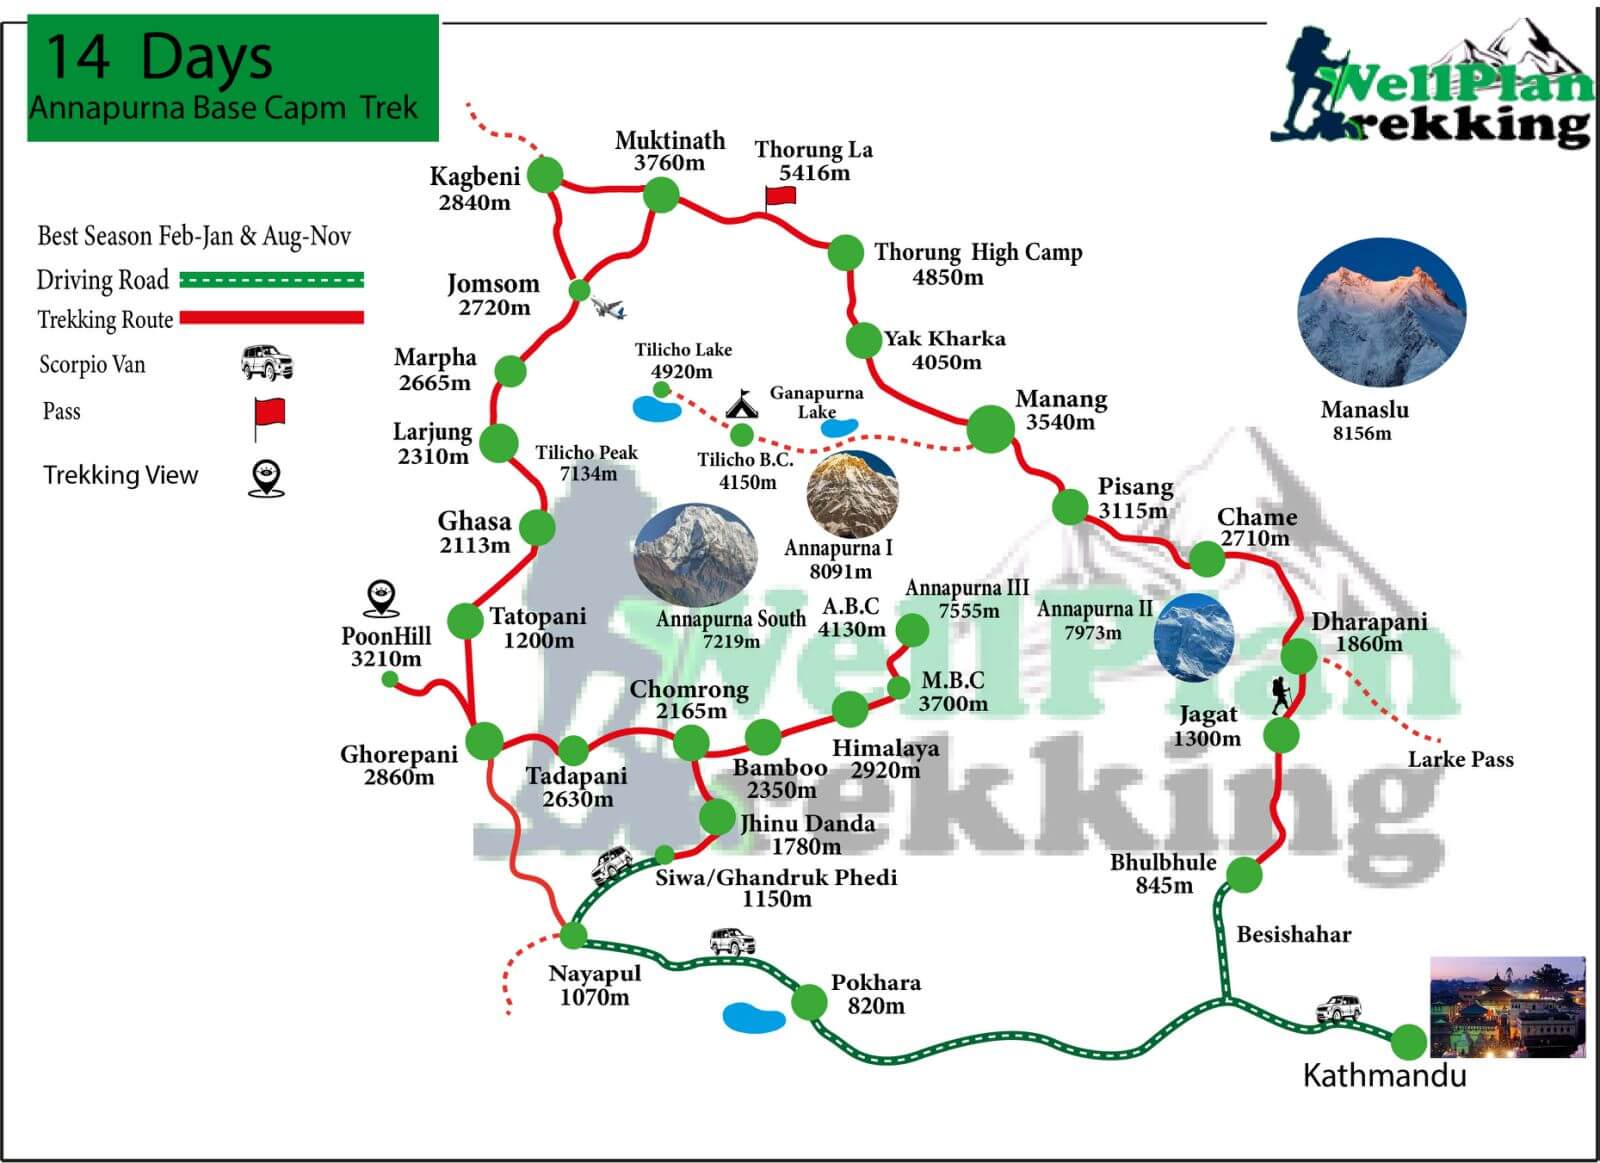 Annapurna Base Camp trek 14 days map 